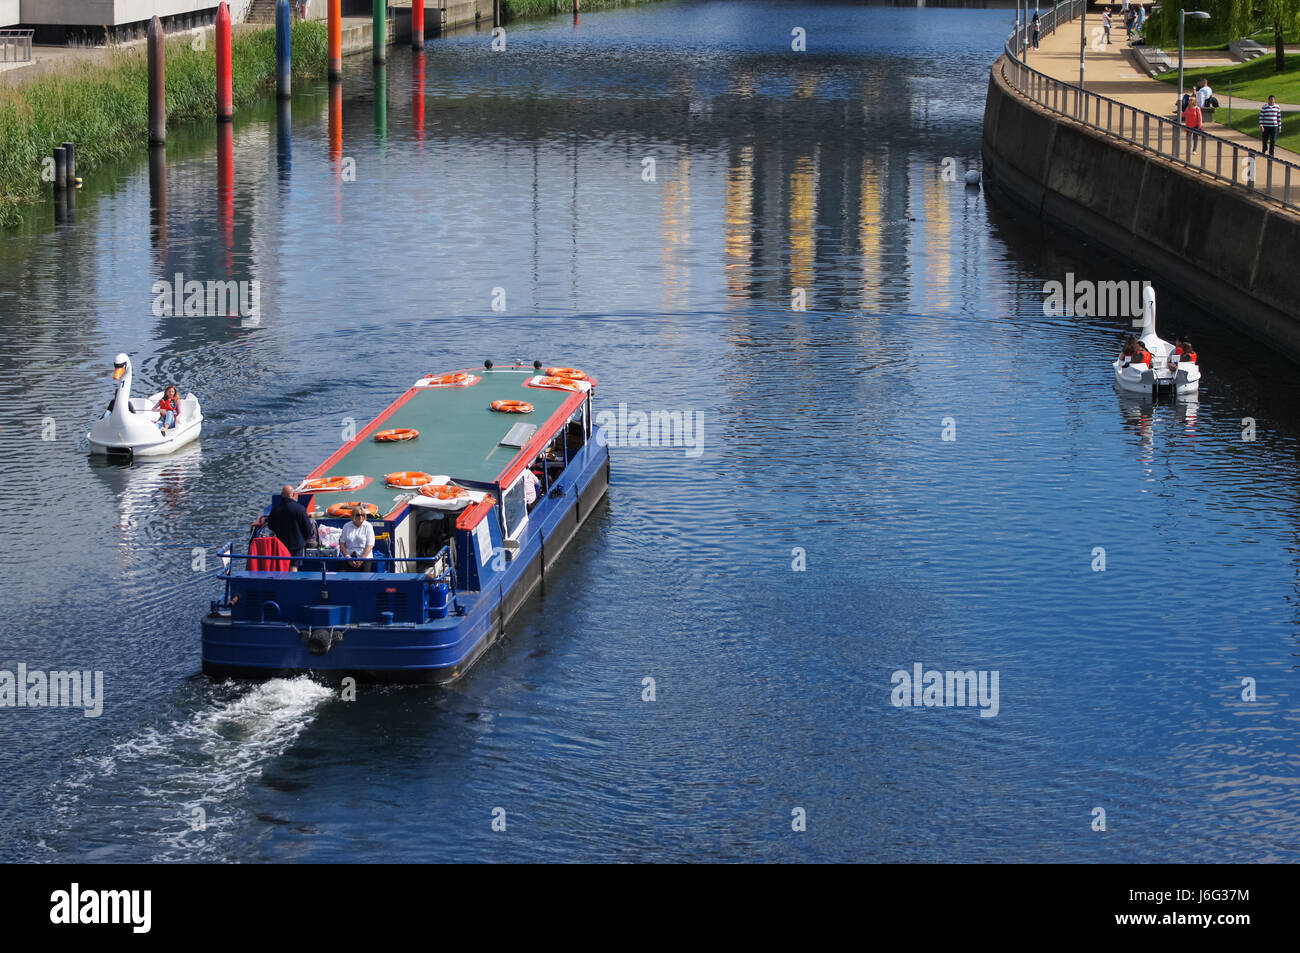 Die Menschen genießen heißen Tag in Swan Tretboote am Fluss Lea im Queen Elizabeth Olympic Park, London England United Kingdom UK Stockfoto